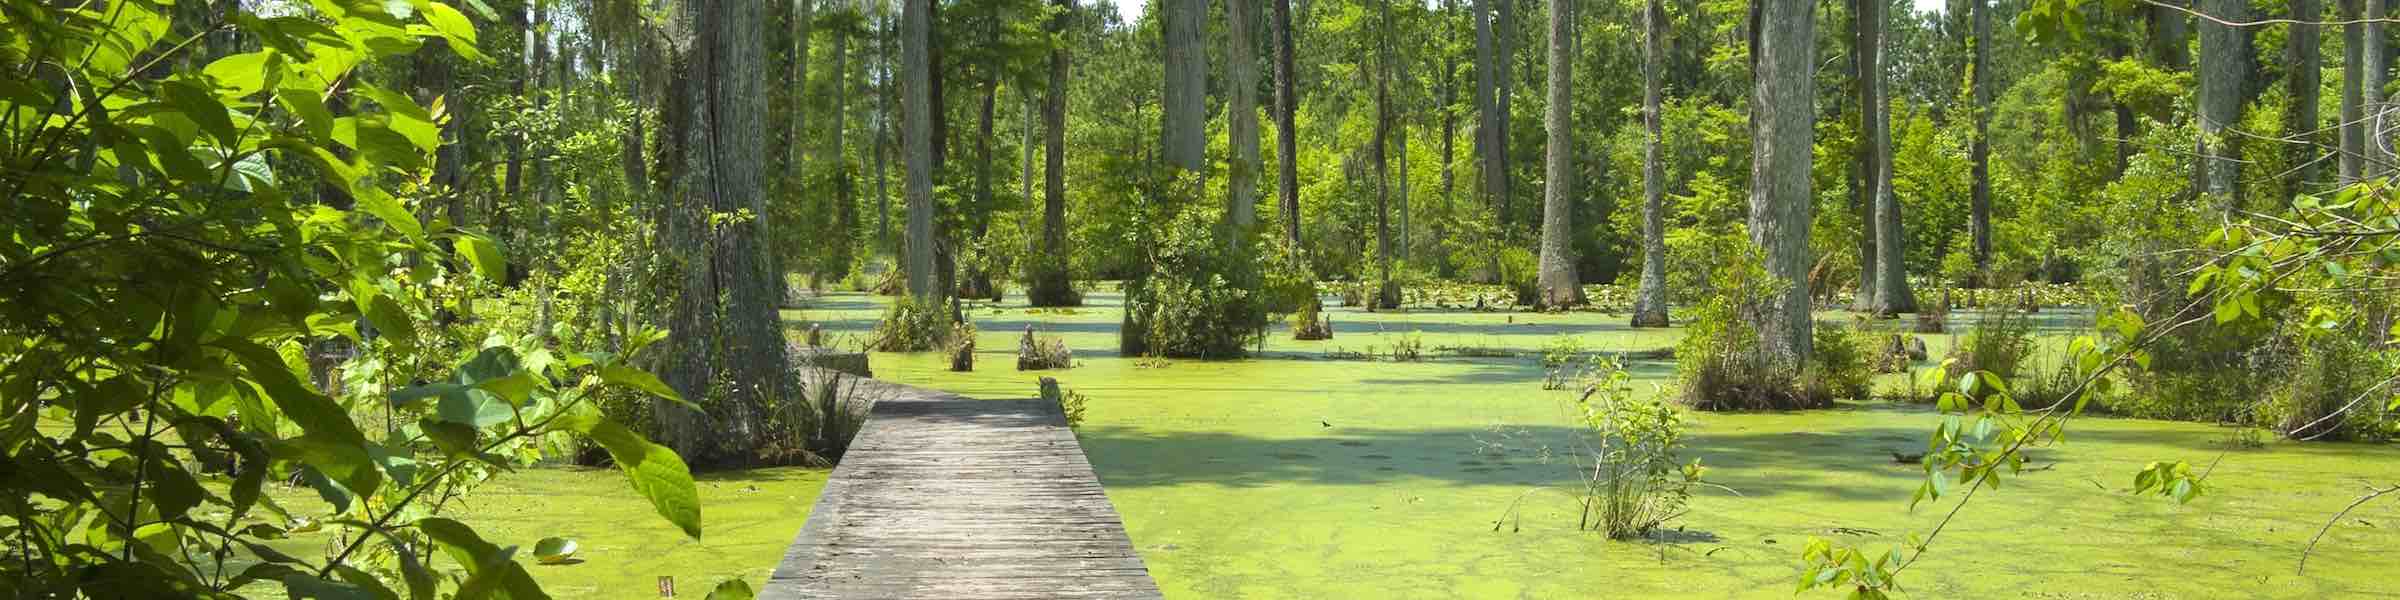 Boardwalk through a cypress swamp near Charleston, SC.